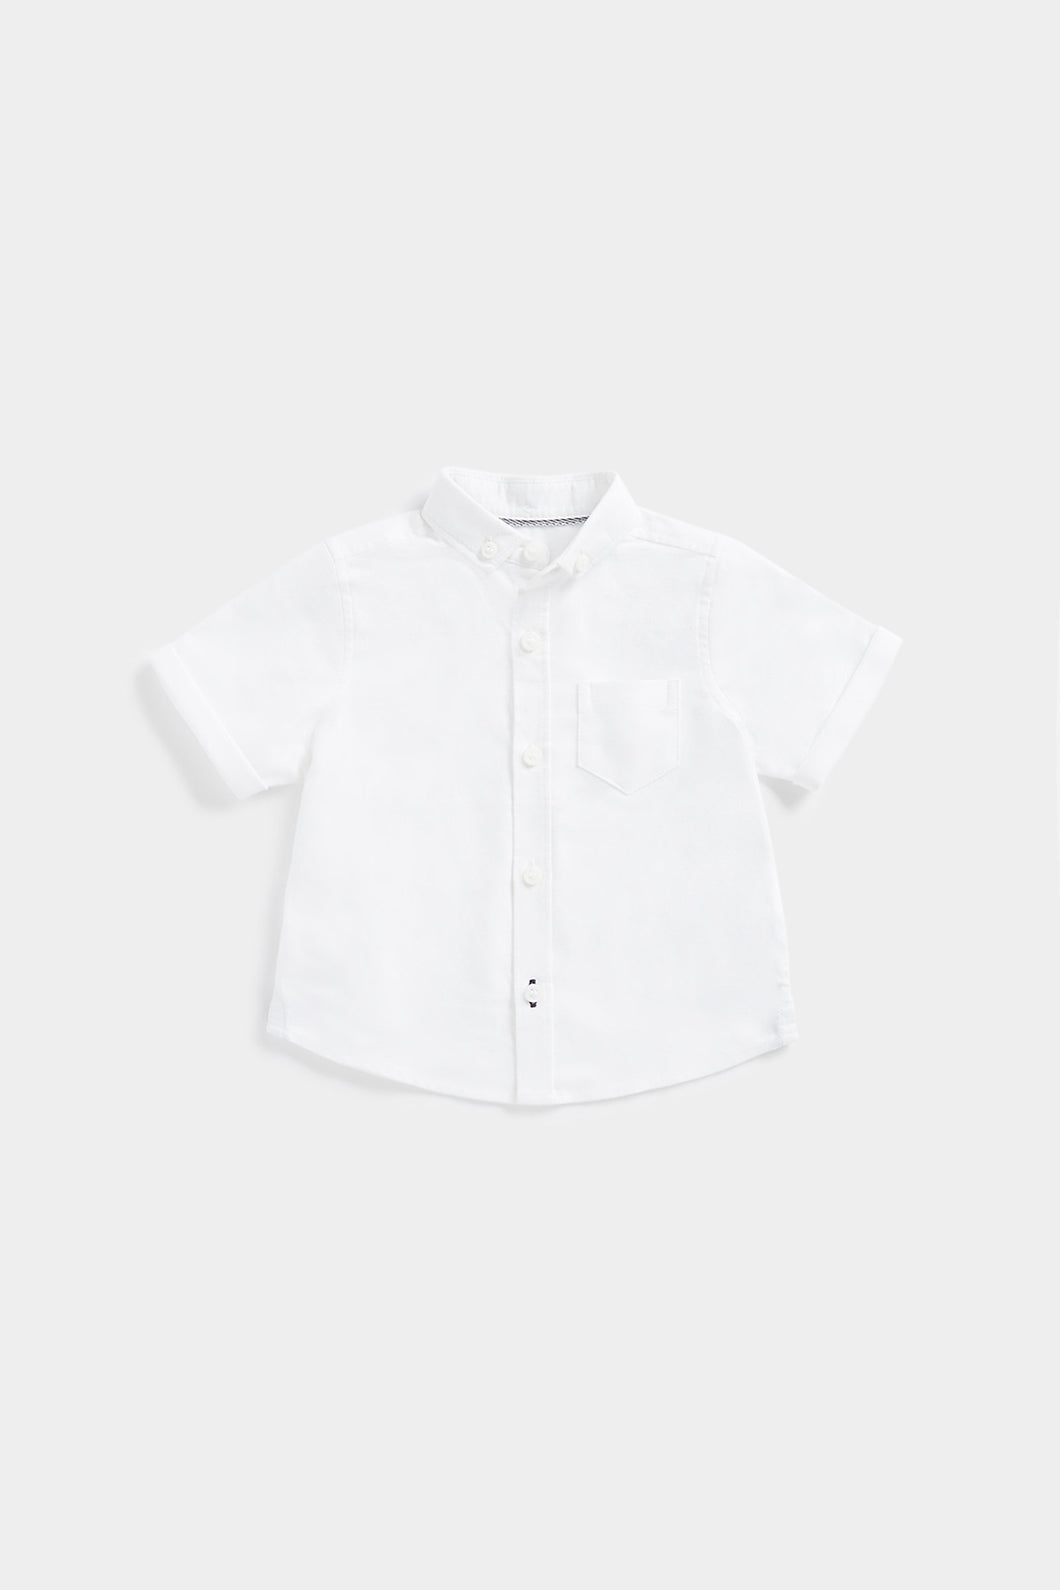 Mothercare White Short-Sleeved Shirt